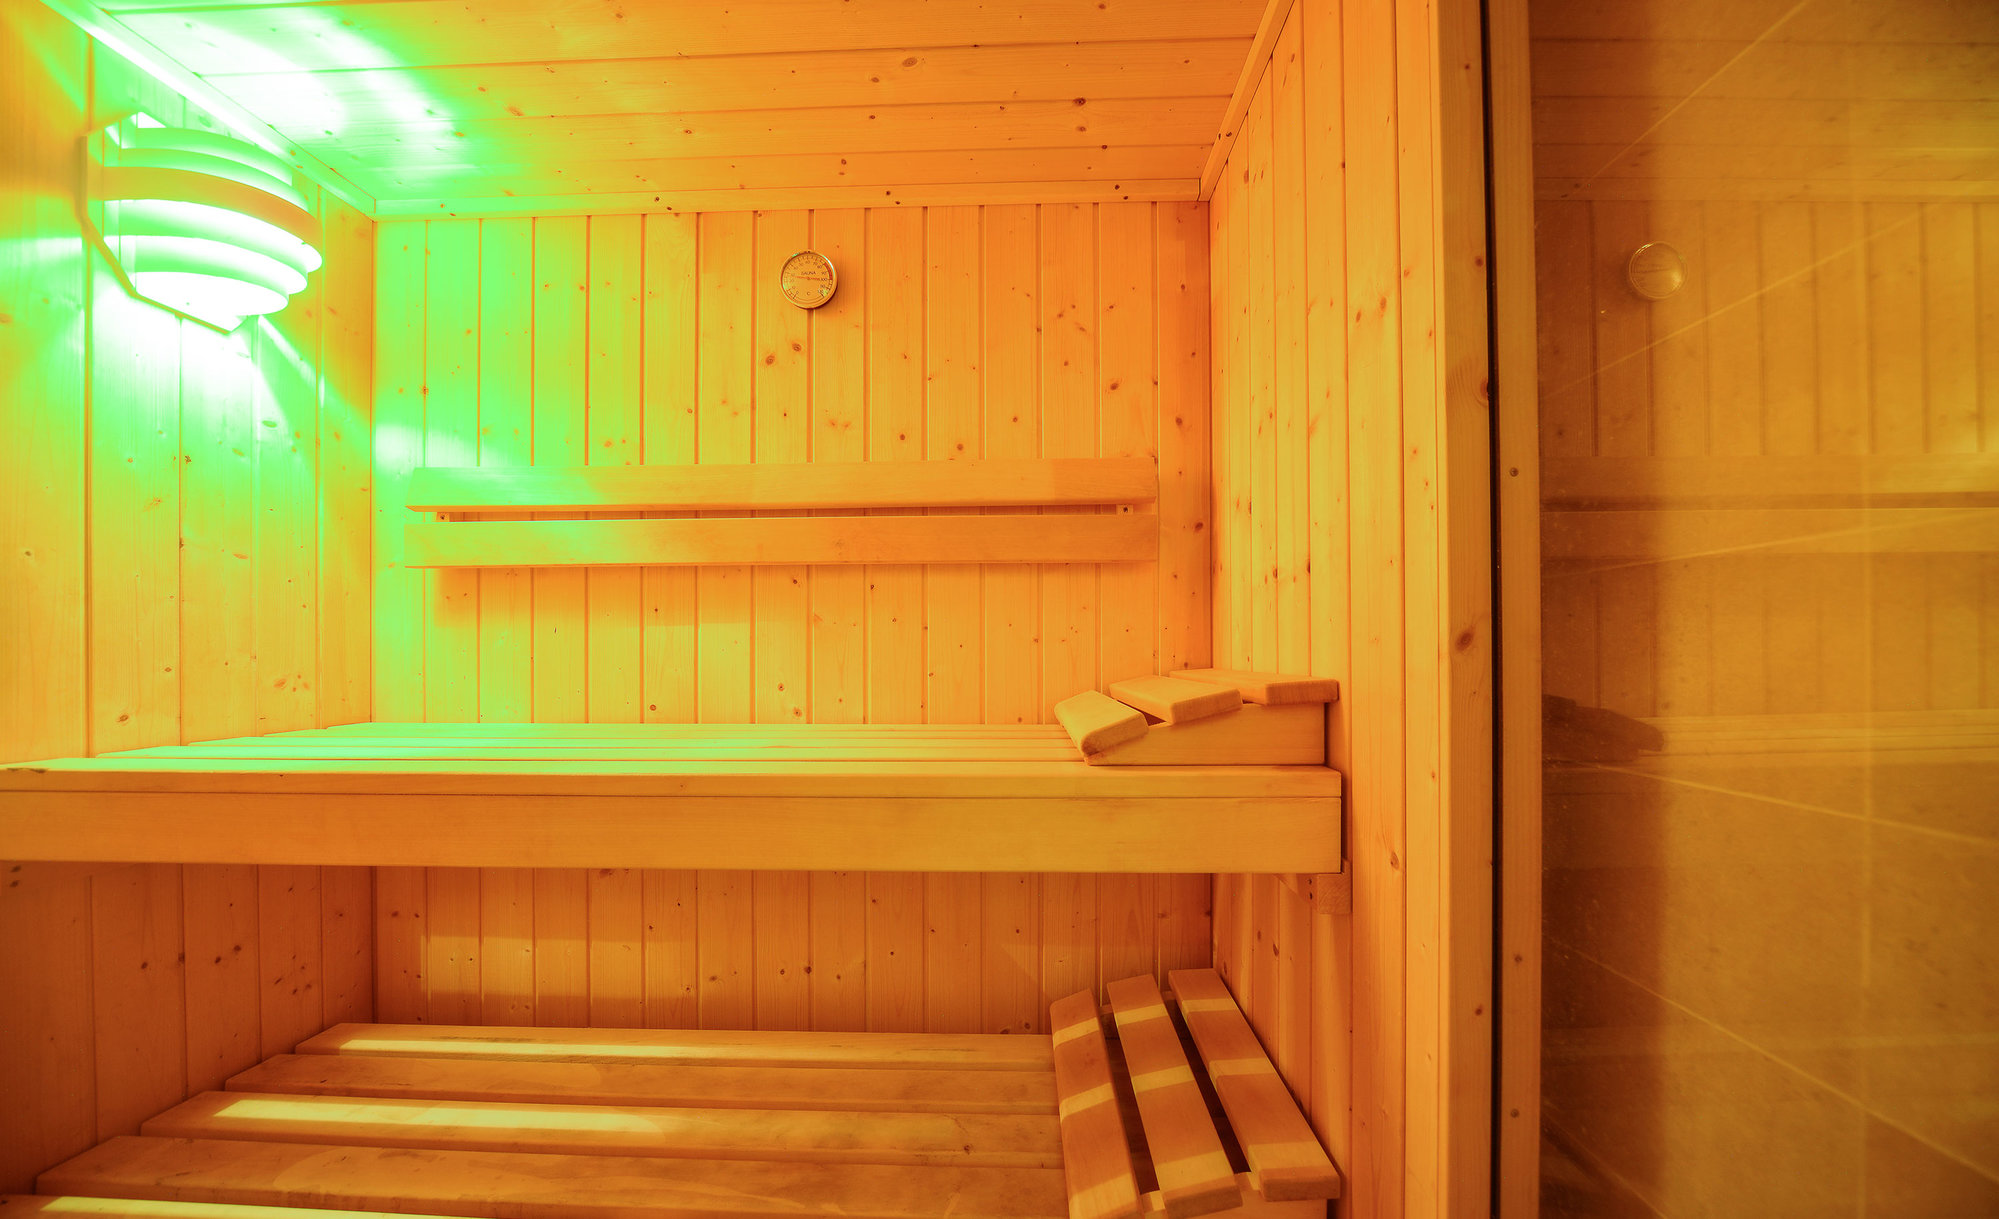 Samantha's sauna